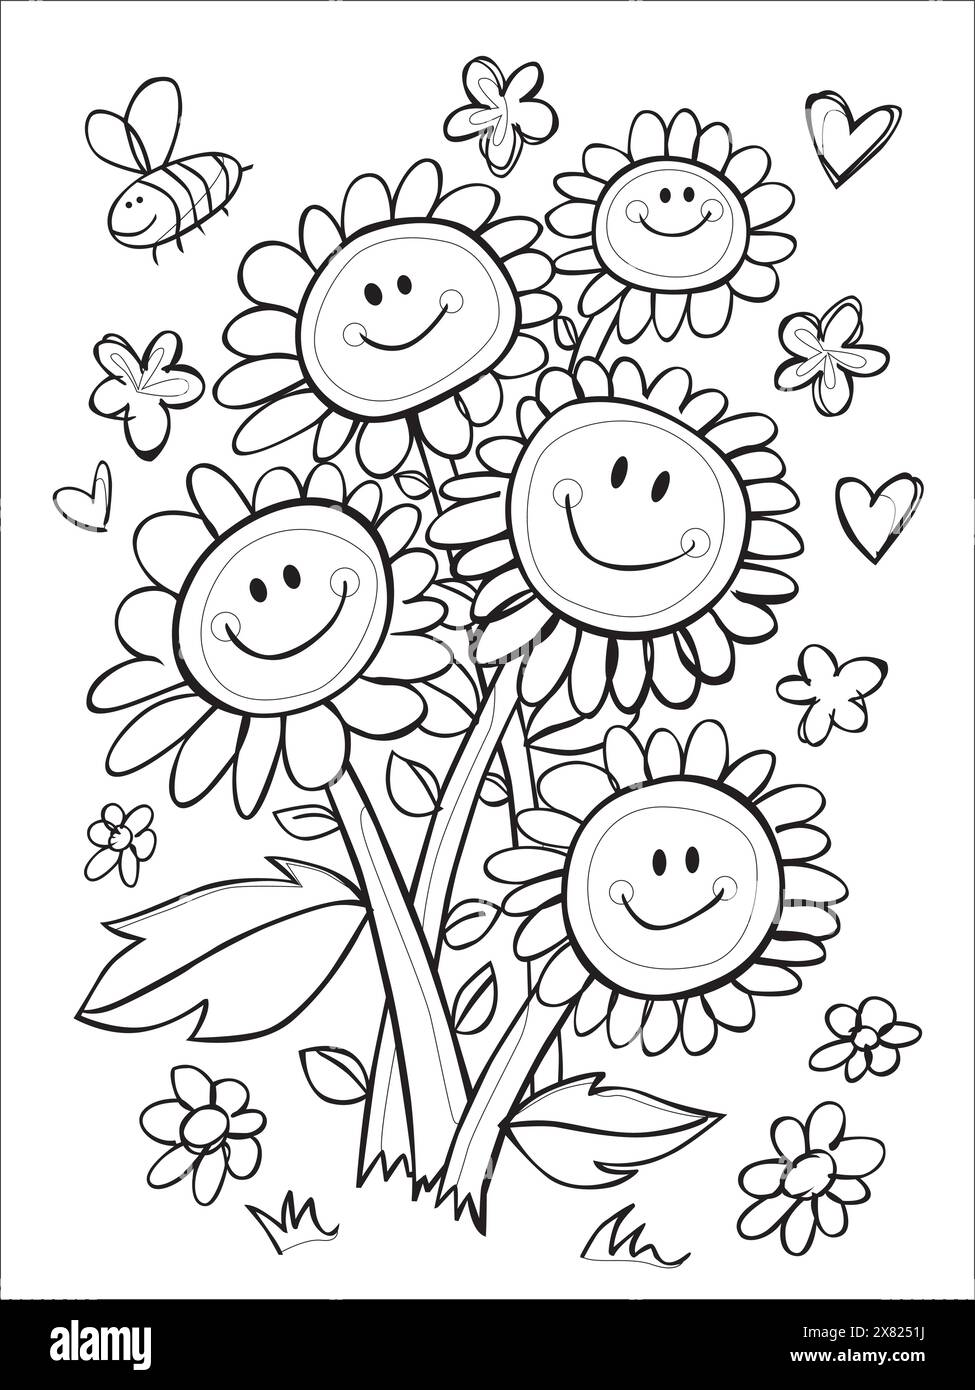 Feuille de coloration noire et blanche vectorielle avec illustration de bouquet de fleurs de visage souriant dessinée à la main avec des coeurs et des étoiles courbes. Coloriage adapté aux enfants Illustration de Vecteur